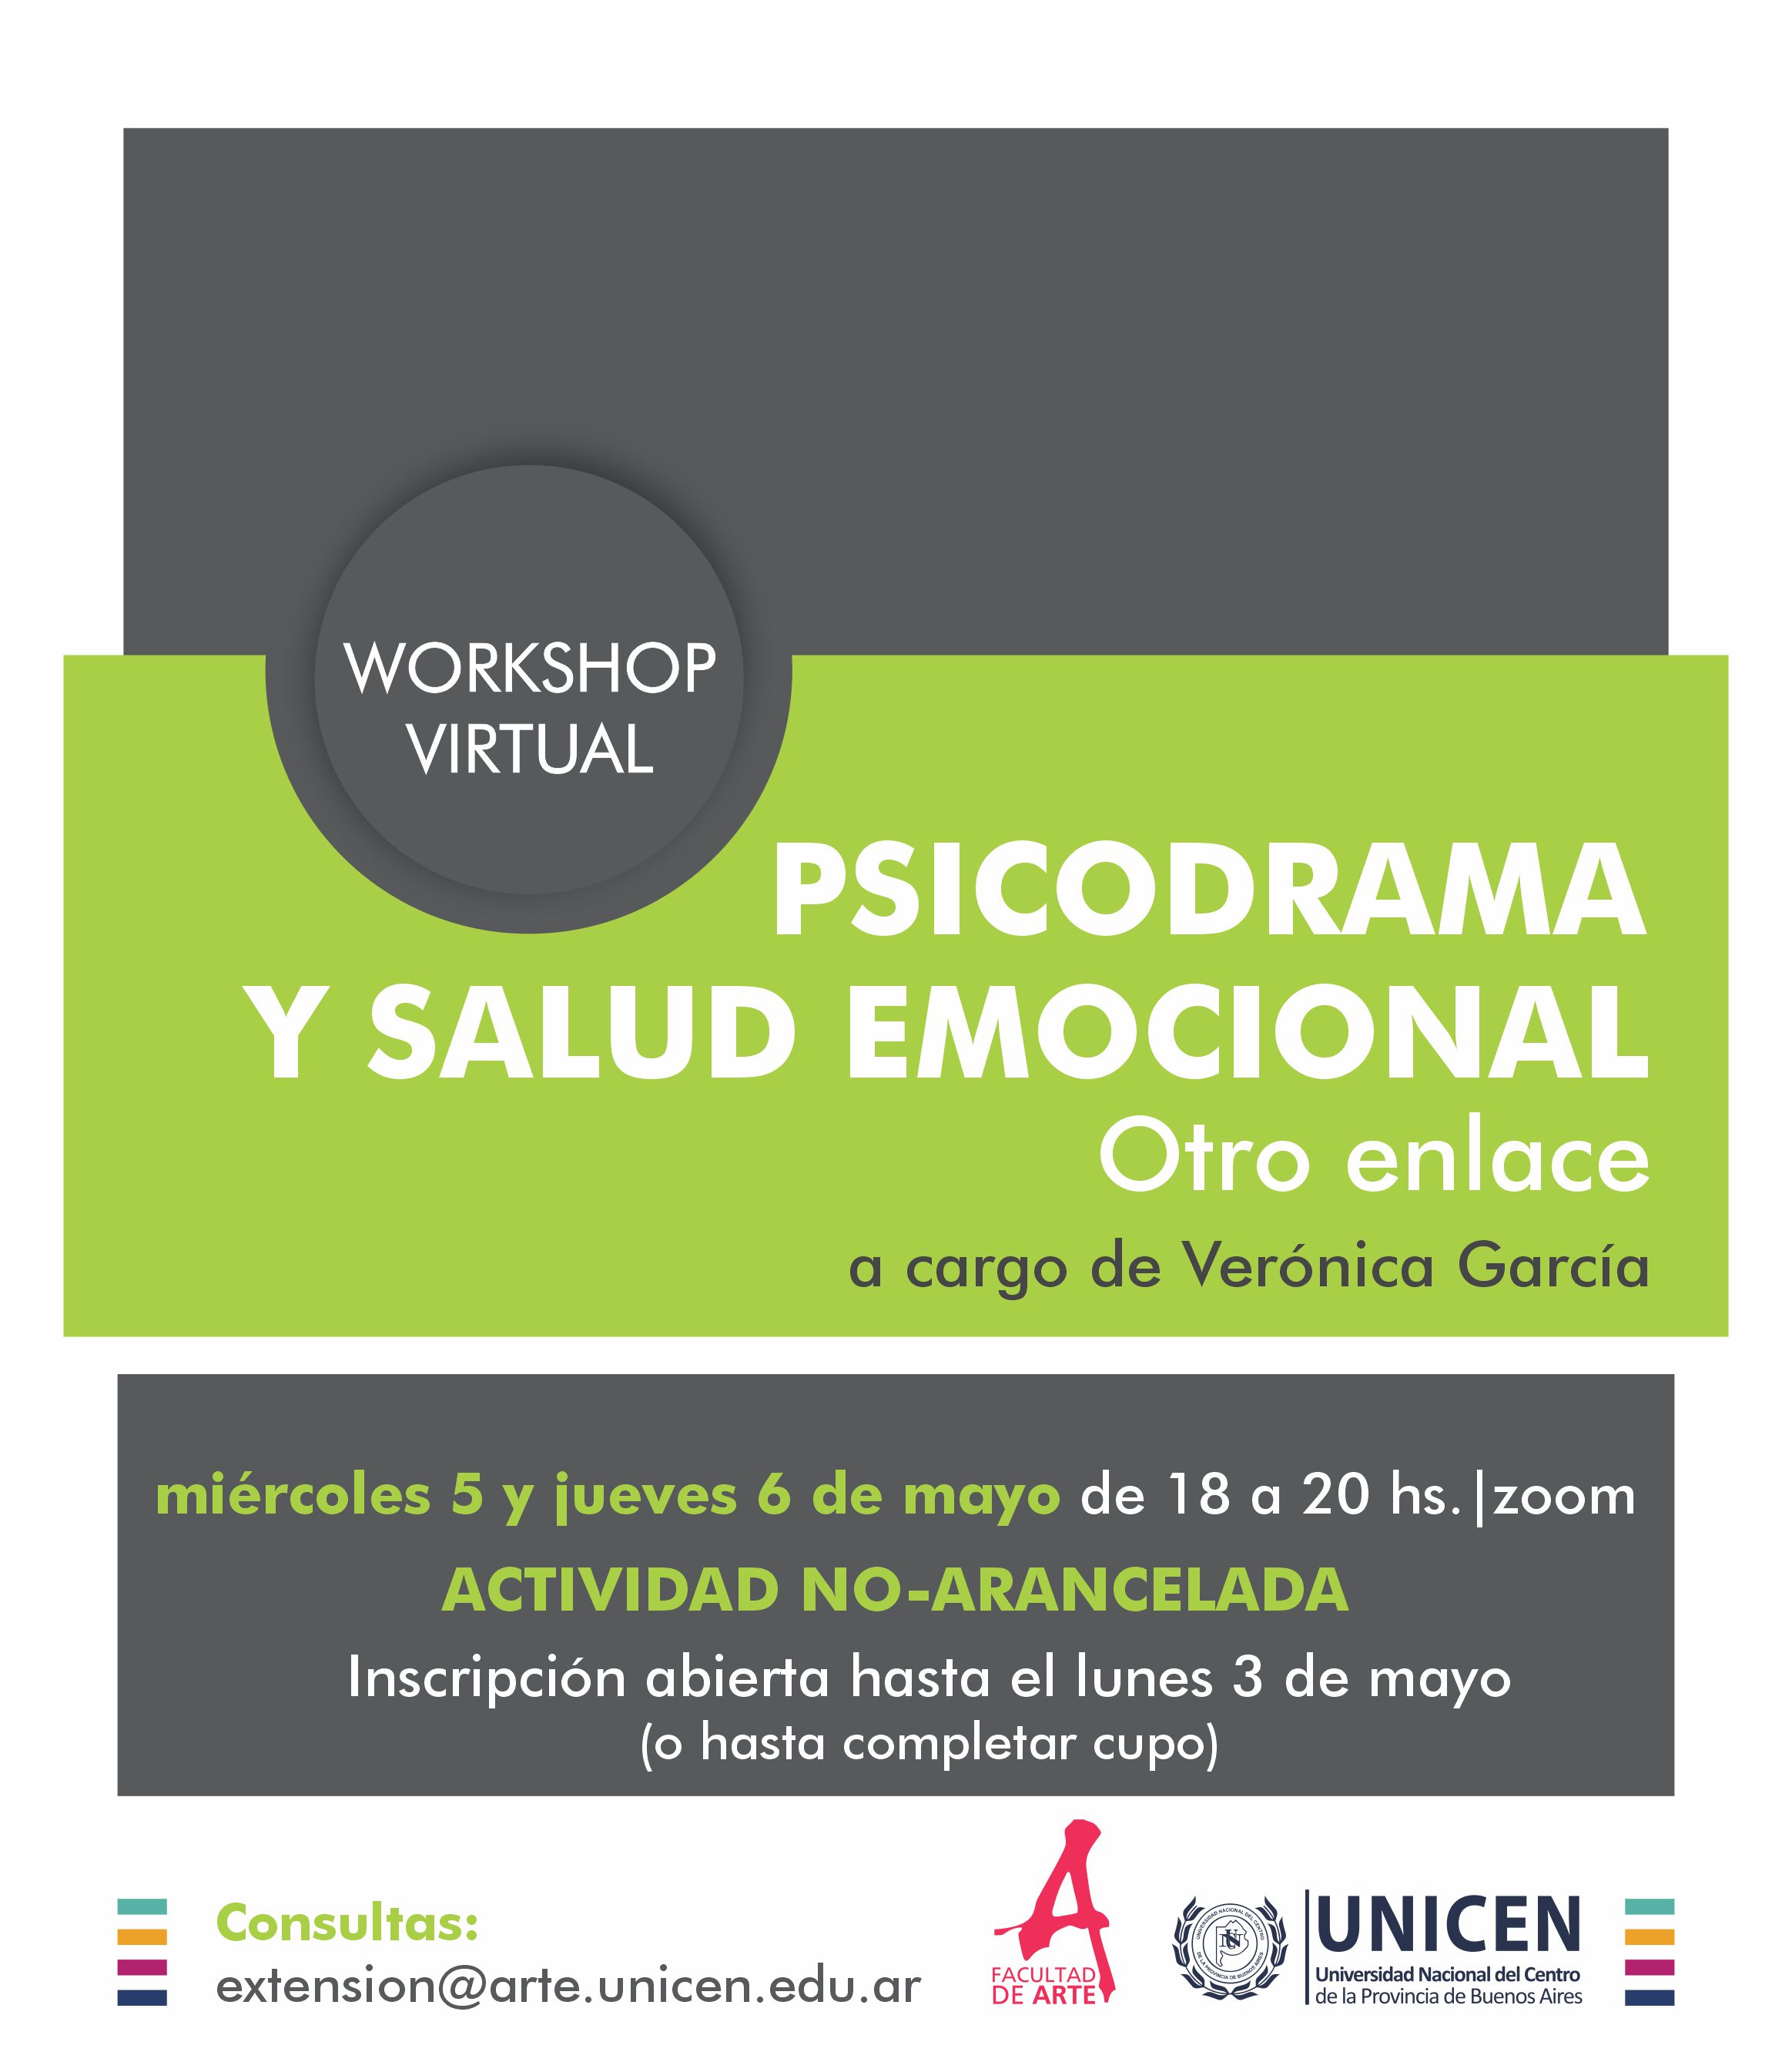 Workshop 'Psicodrama y salud emocional. Otro enlace' por Verónica García